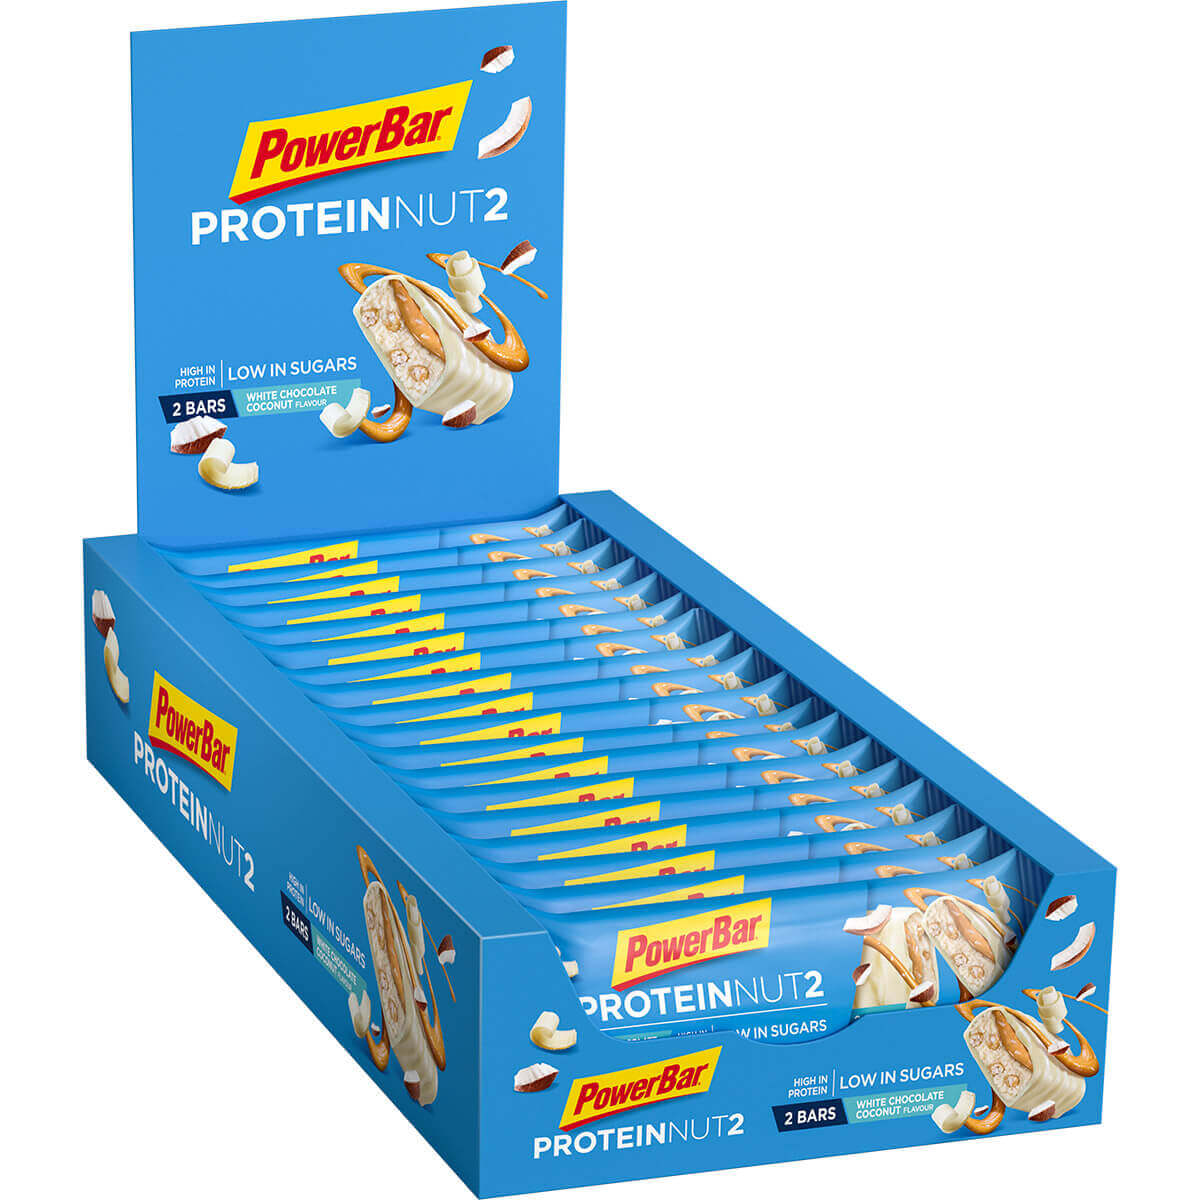 Protein Nut2